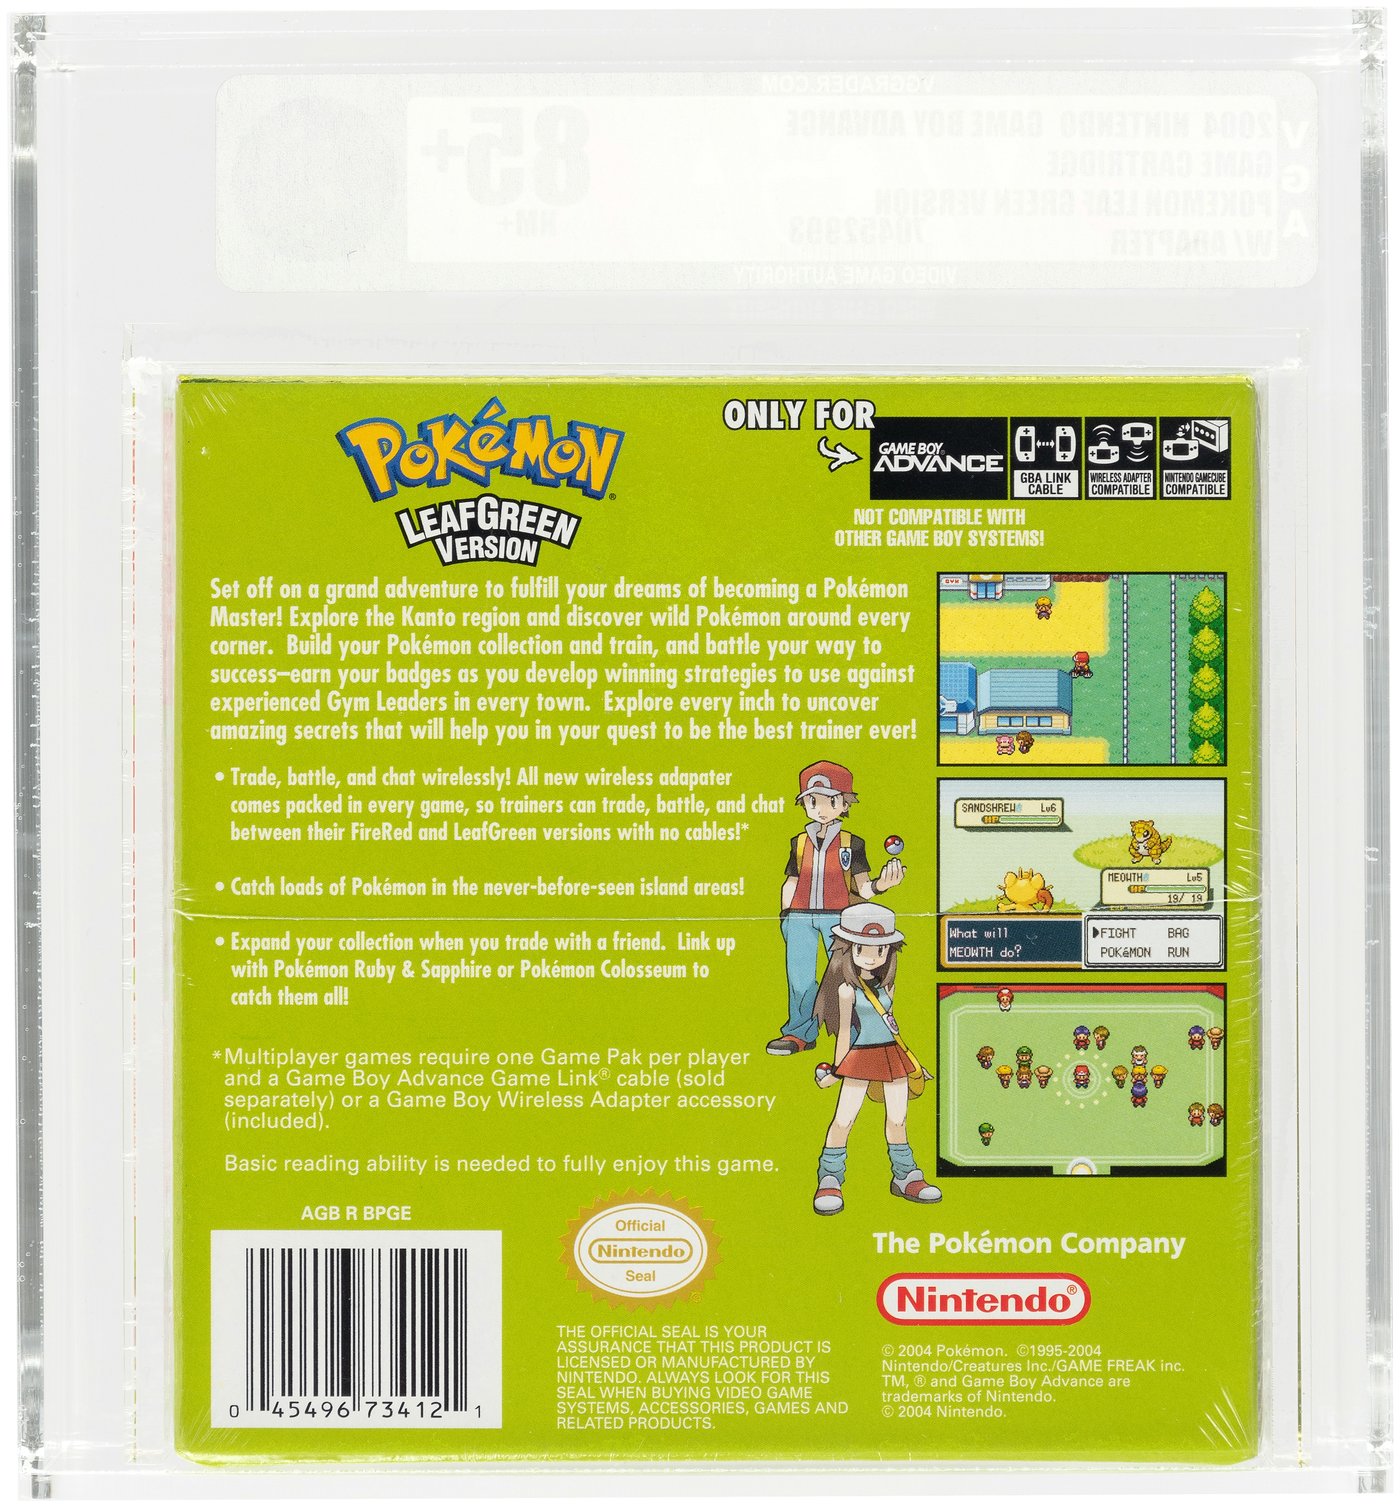 Pokemon Leaf Green Version - Game Boy Advance: Game Boy Advance